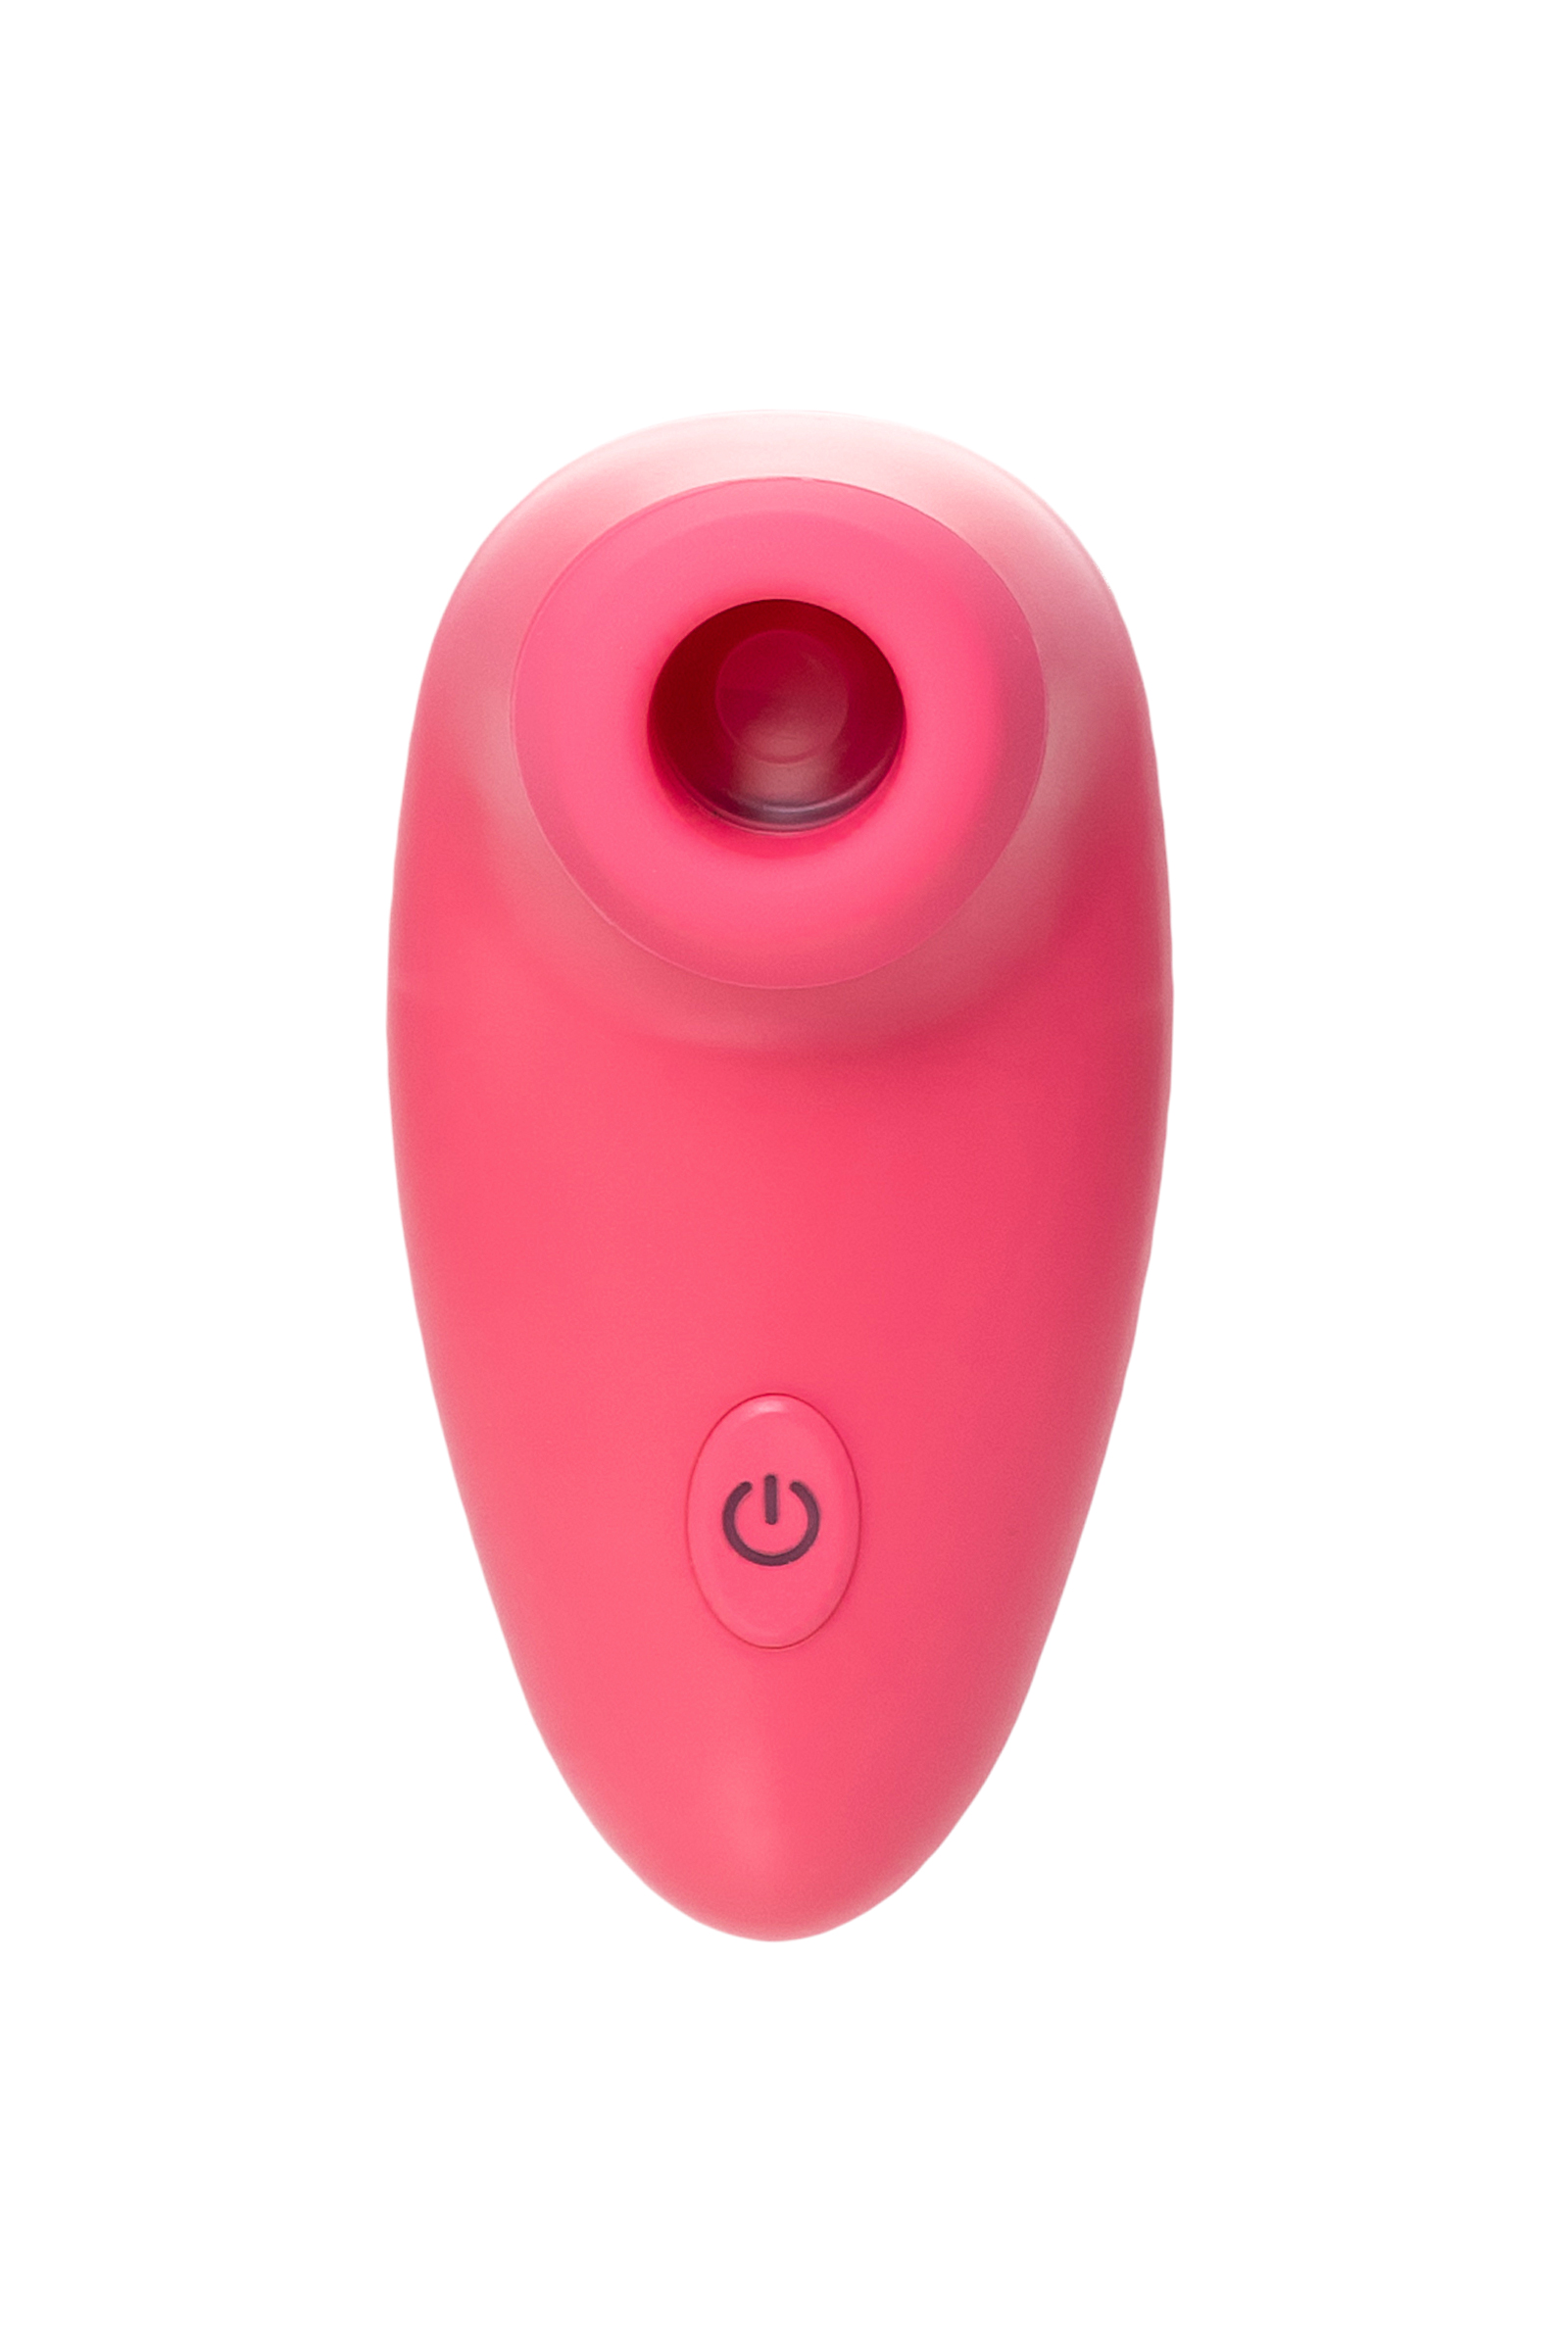 Вакуумный стимулятор клитора PPP CHUPA-CHUPA ZENGI ROTOR, ABS-пластик, розовый, 9 см. Фото N3